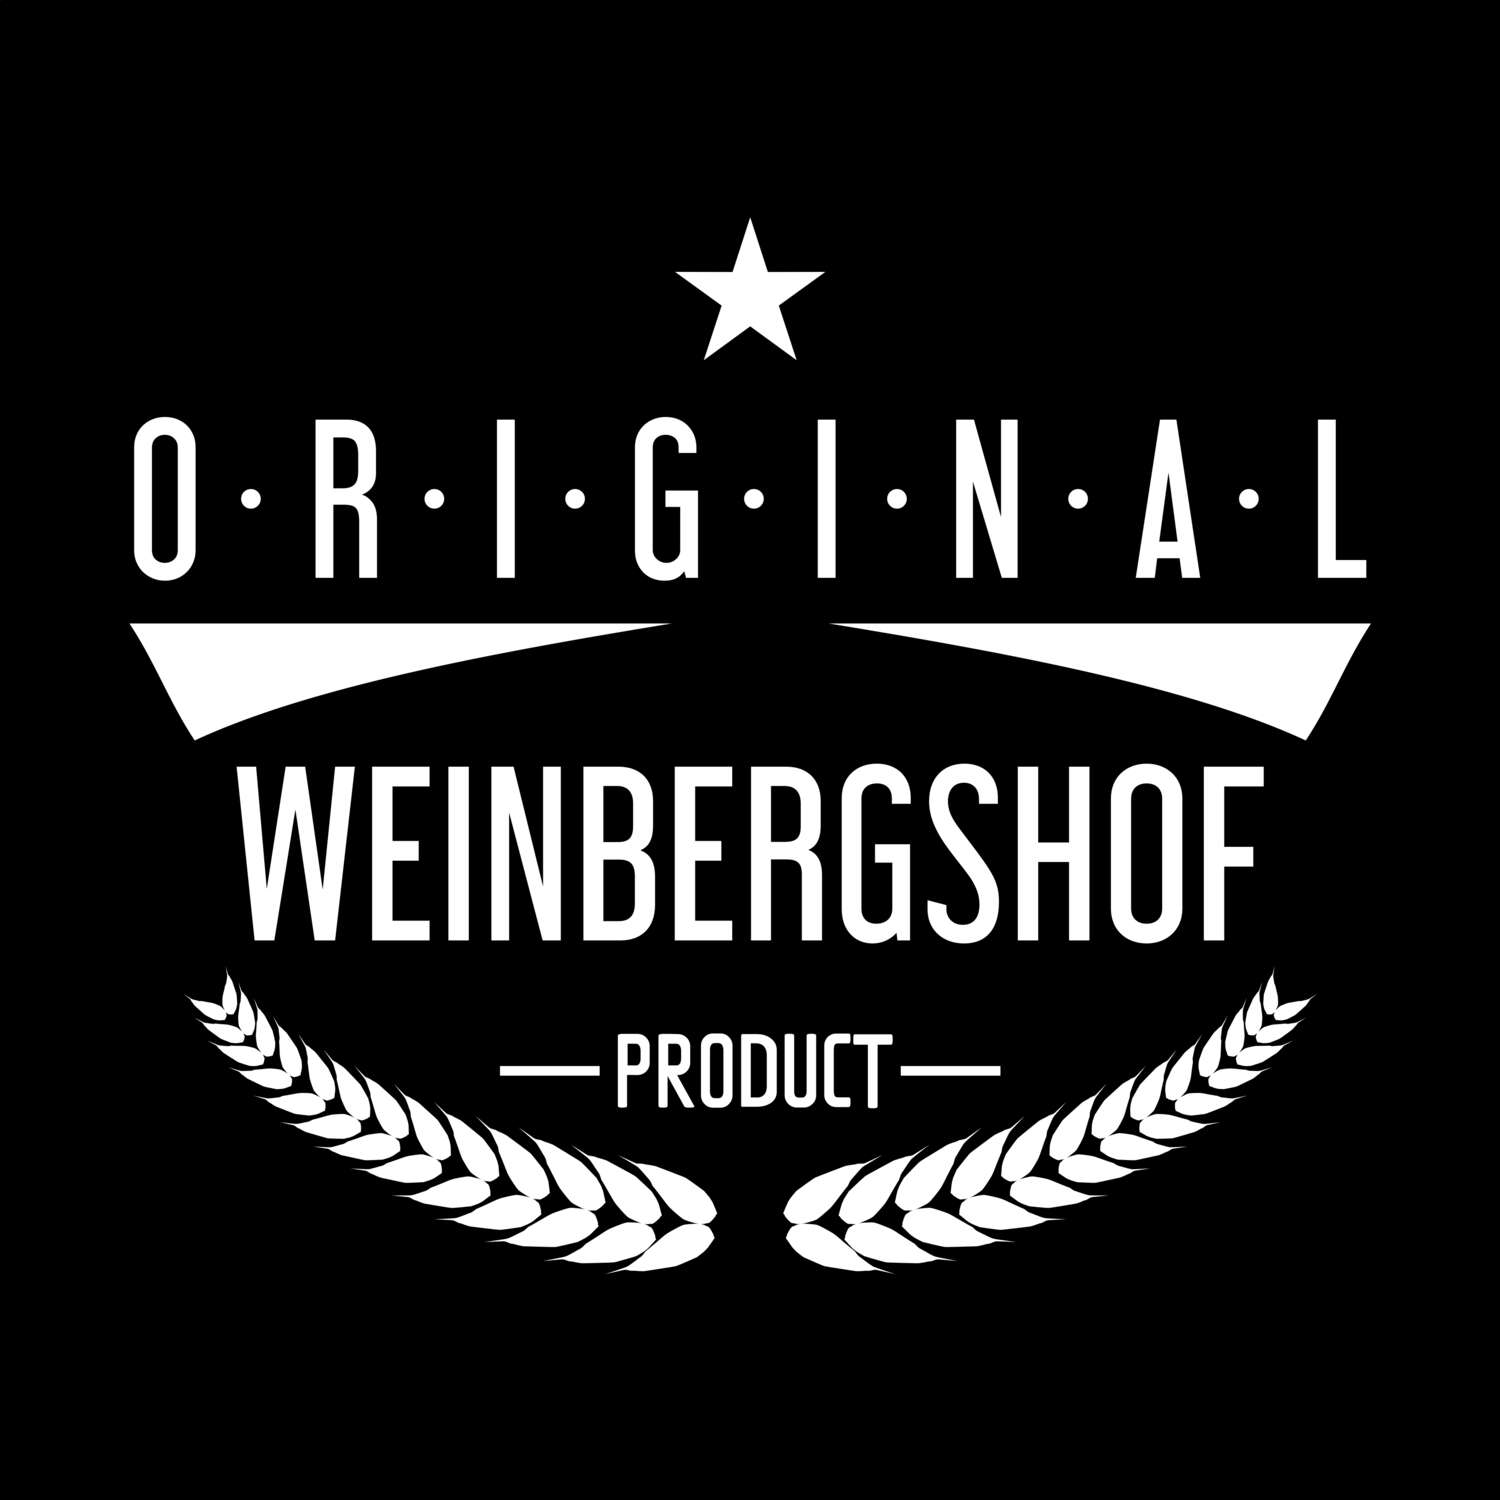 Weinbergshof T-Shirt »Original Product«